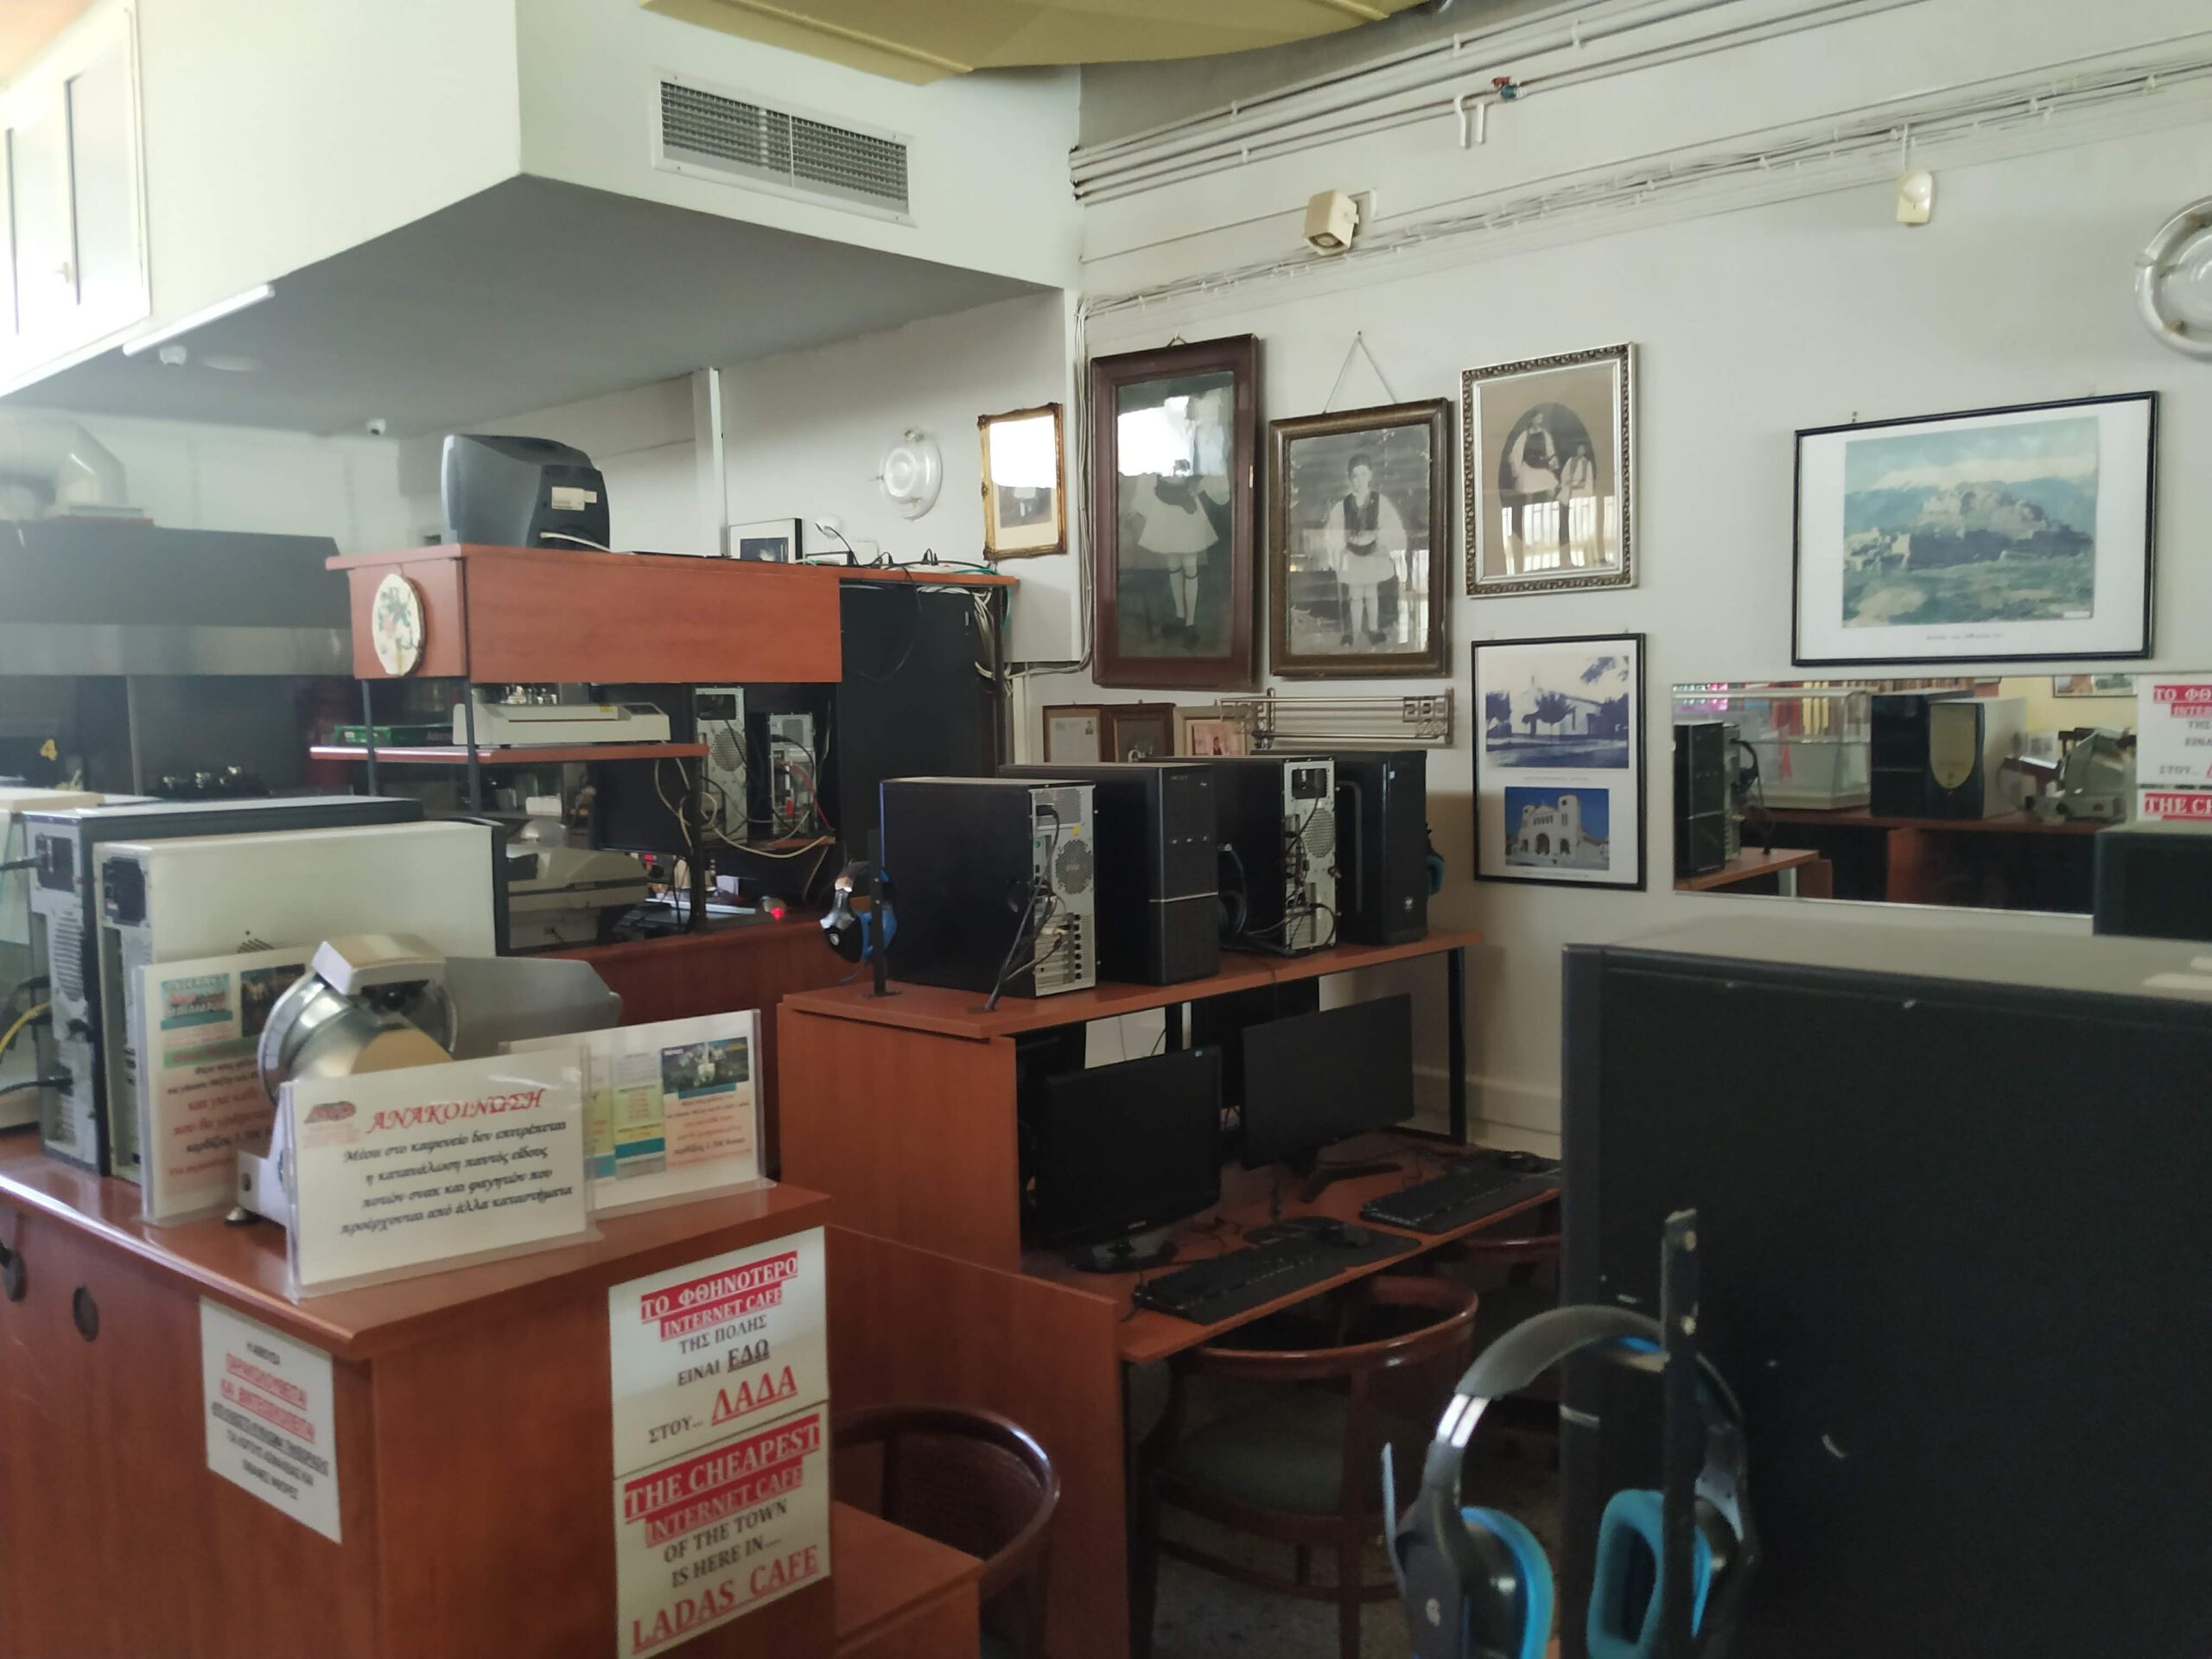 ΣΠΑΡΤΗ – Πωλείται επιχείρηση καφενείο – internet cafe – μπιλιάρδο – ping pong